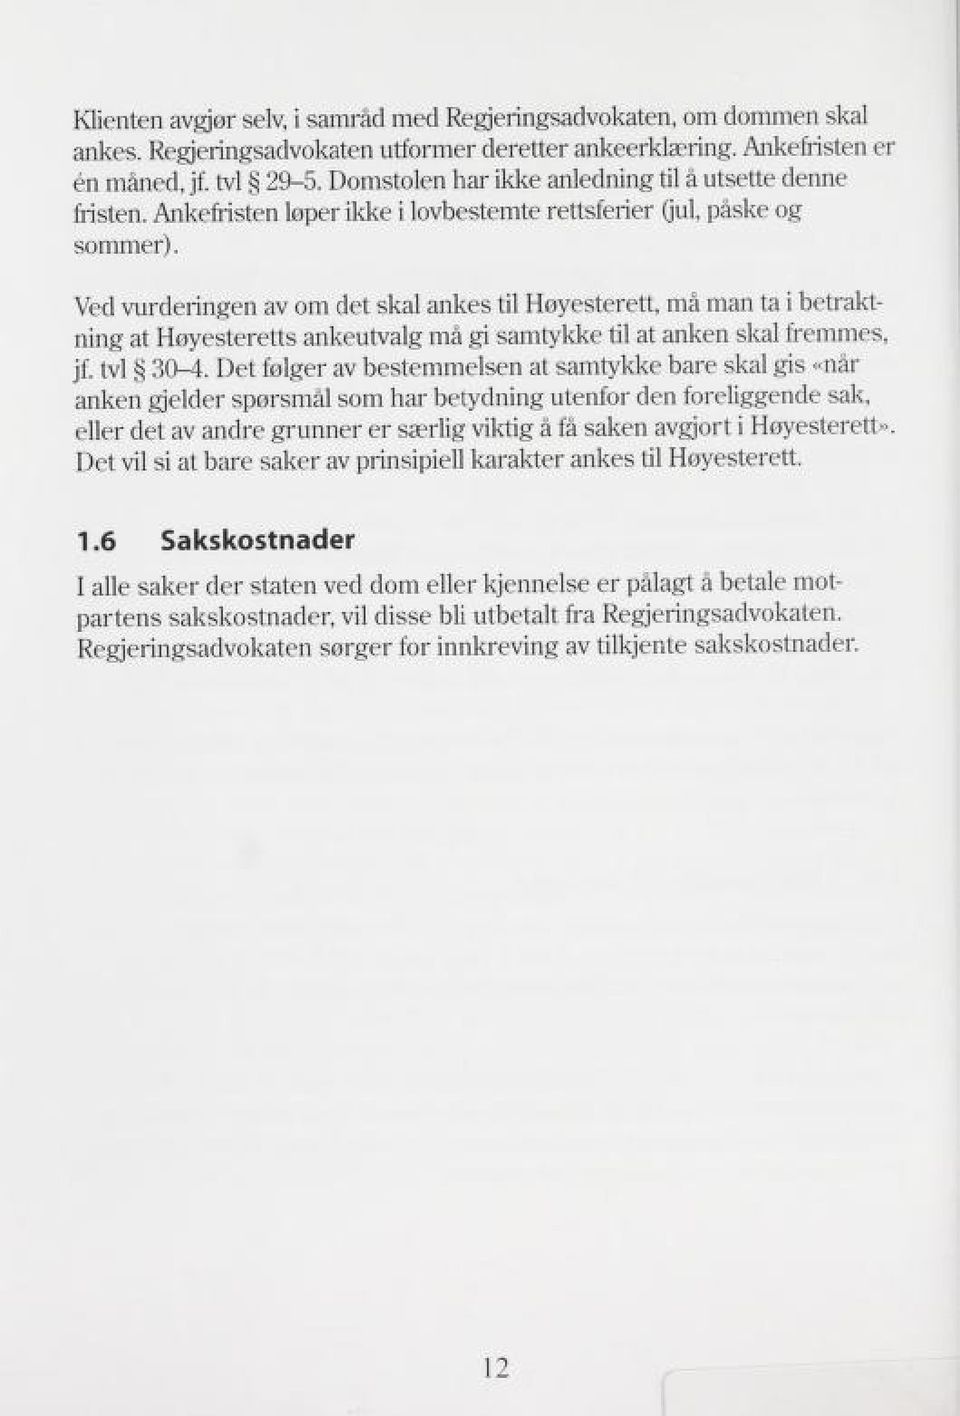 Ved vurderingen av om det skal ankes til Høyesterett, må man ta i betrakt ning at Høyesteretts ankeutvalg må gi samtykke til at anken skal fremmes, jf. tvi 30-4.